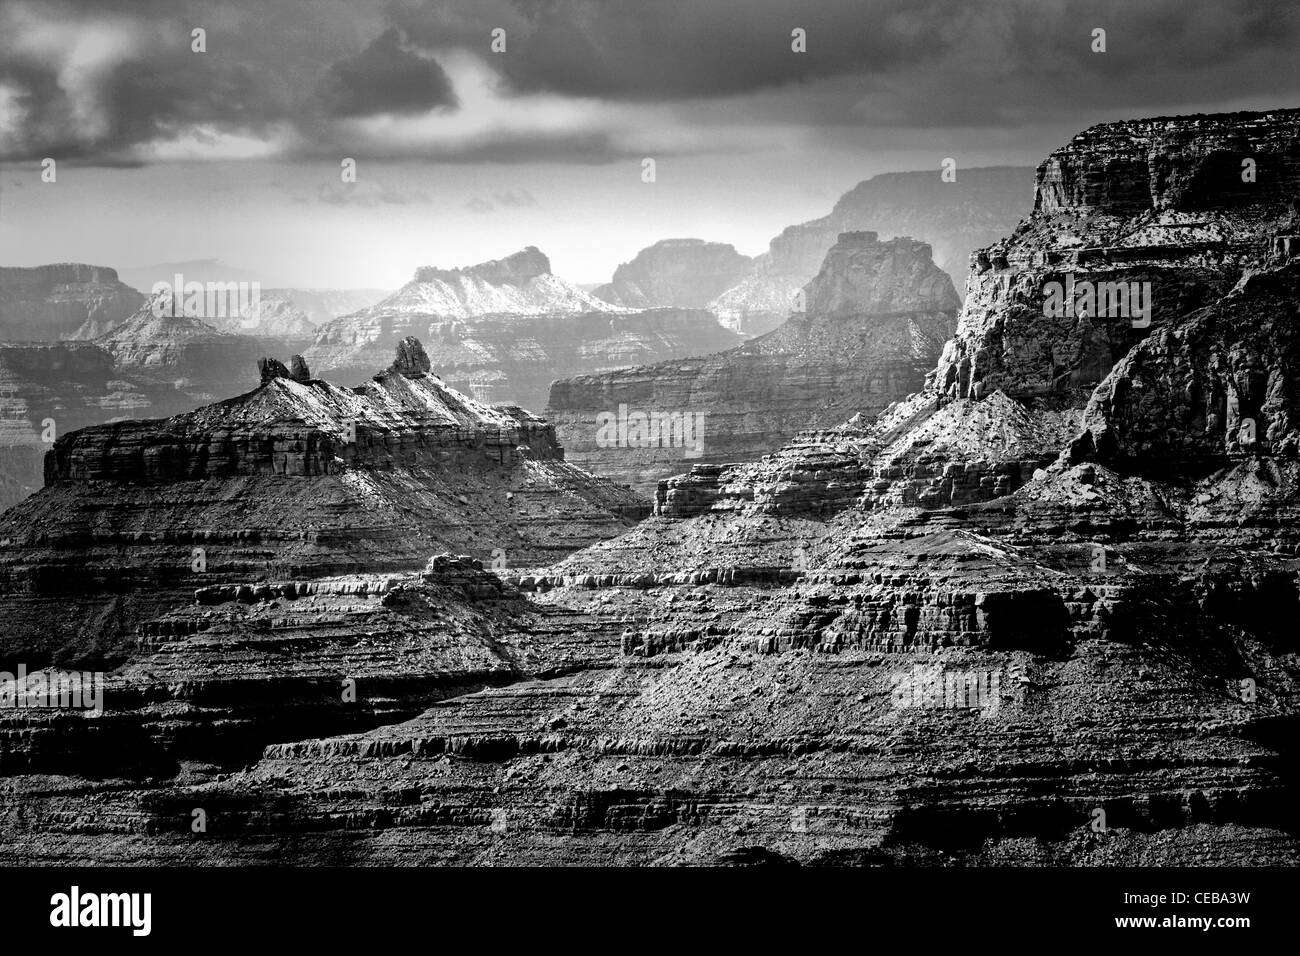 La vista de Desert View vers le Temple de Salomon, Grand Canyon South Rim, Arizona. Banque D'Images